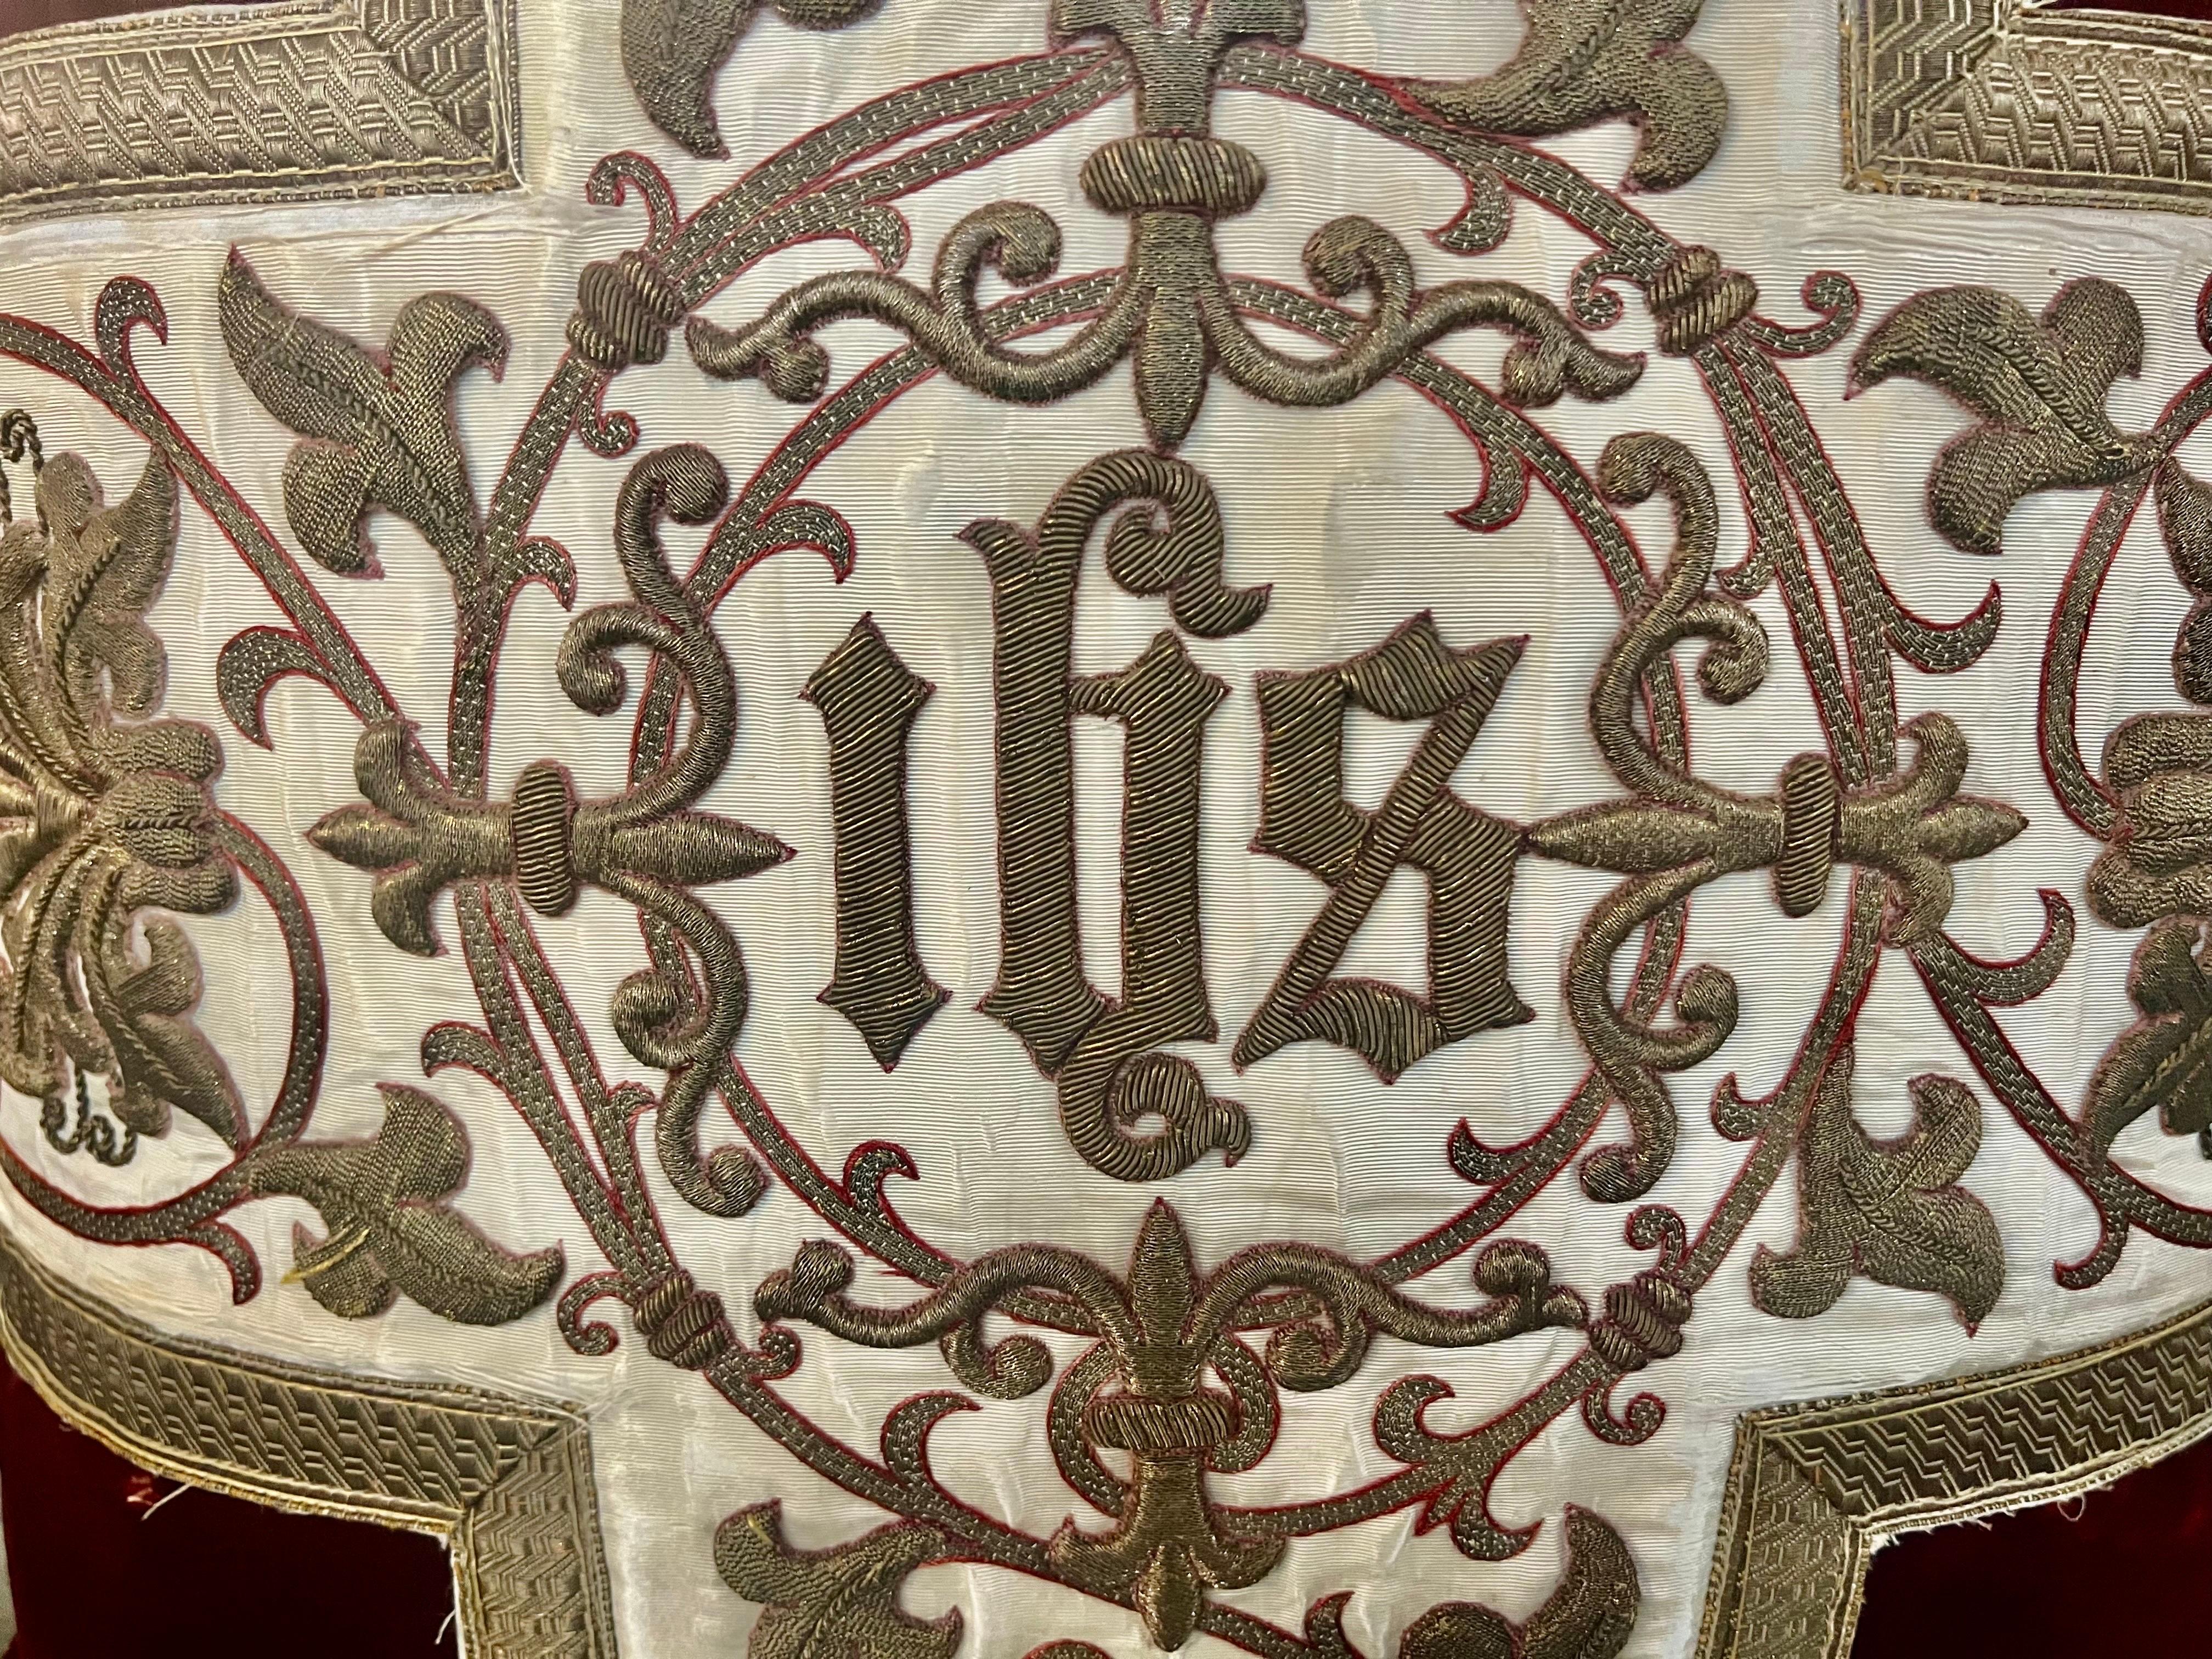 Un royal oreiller en velours de soie rouge incorporant un textile ecclésiastique en soie crème brodé en or métallique du XIXe siècle, comportant les lettres I-H-S, des fleurs de lys, des feuilles d'acanthe enroulées et des fleurs en or métallique